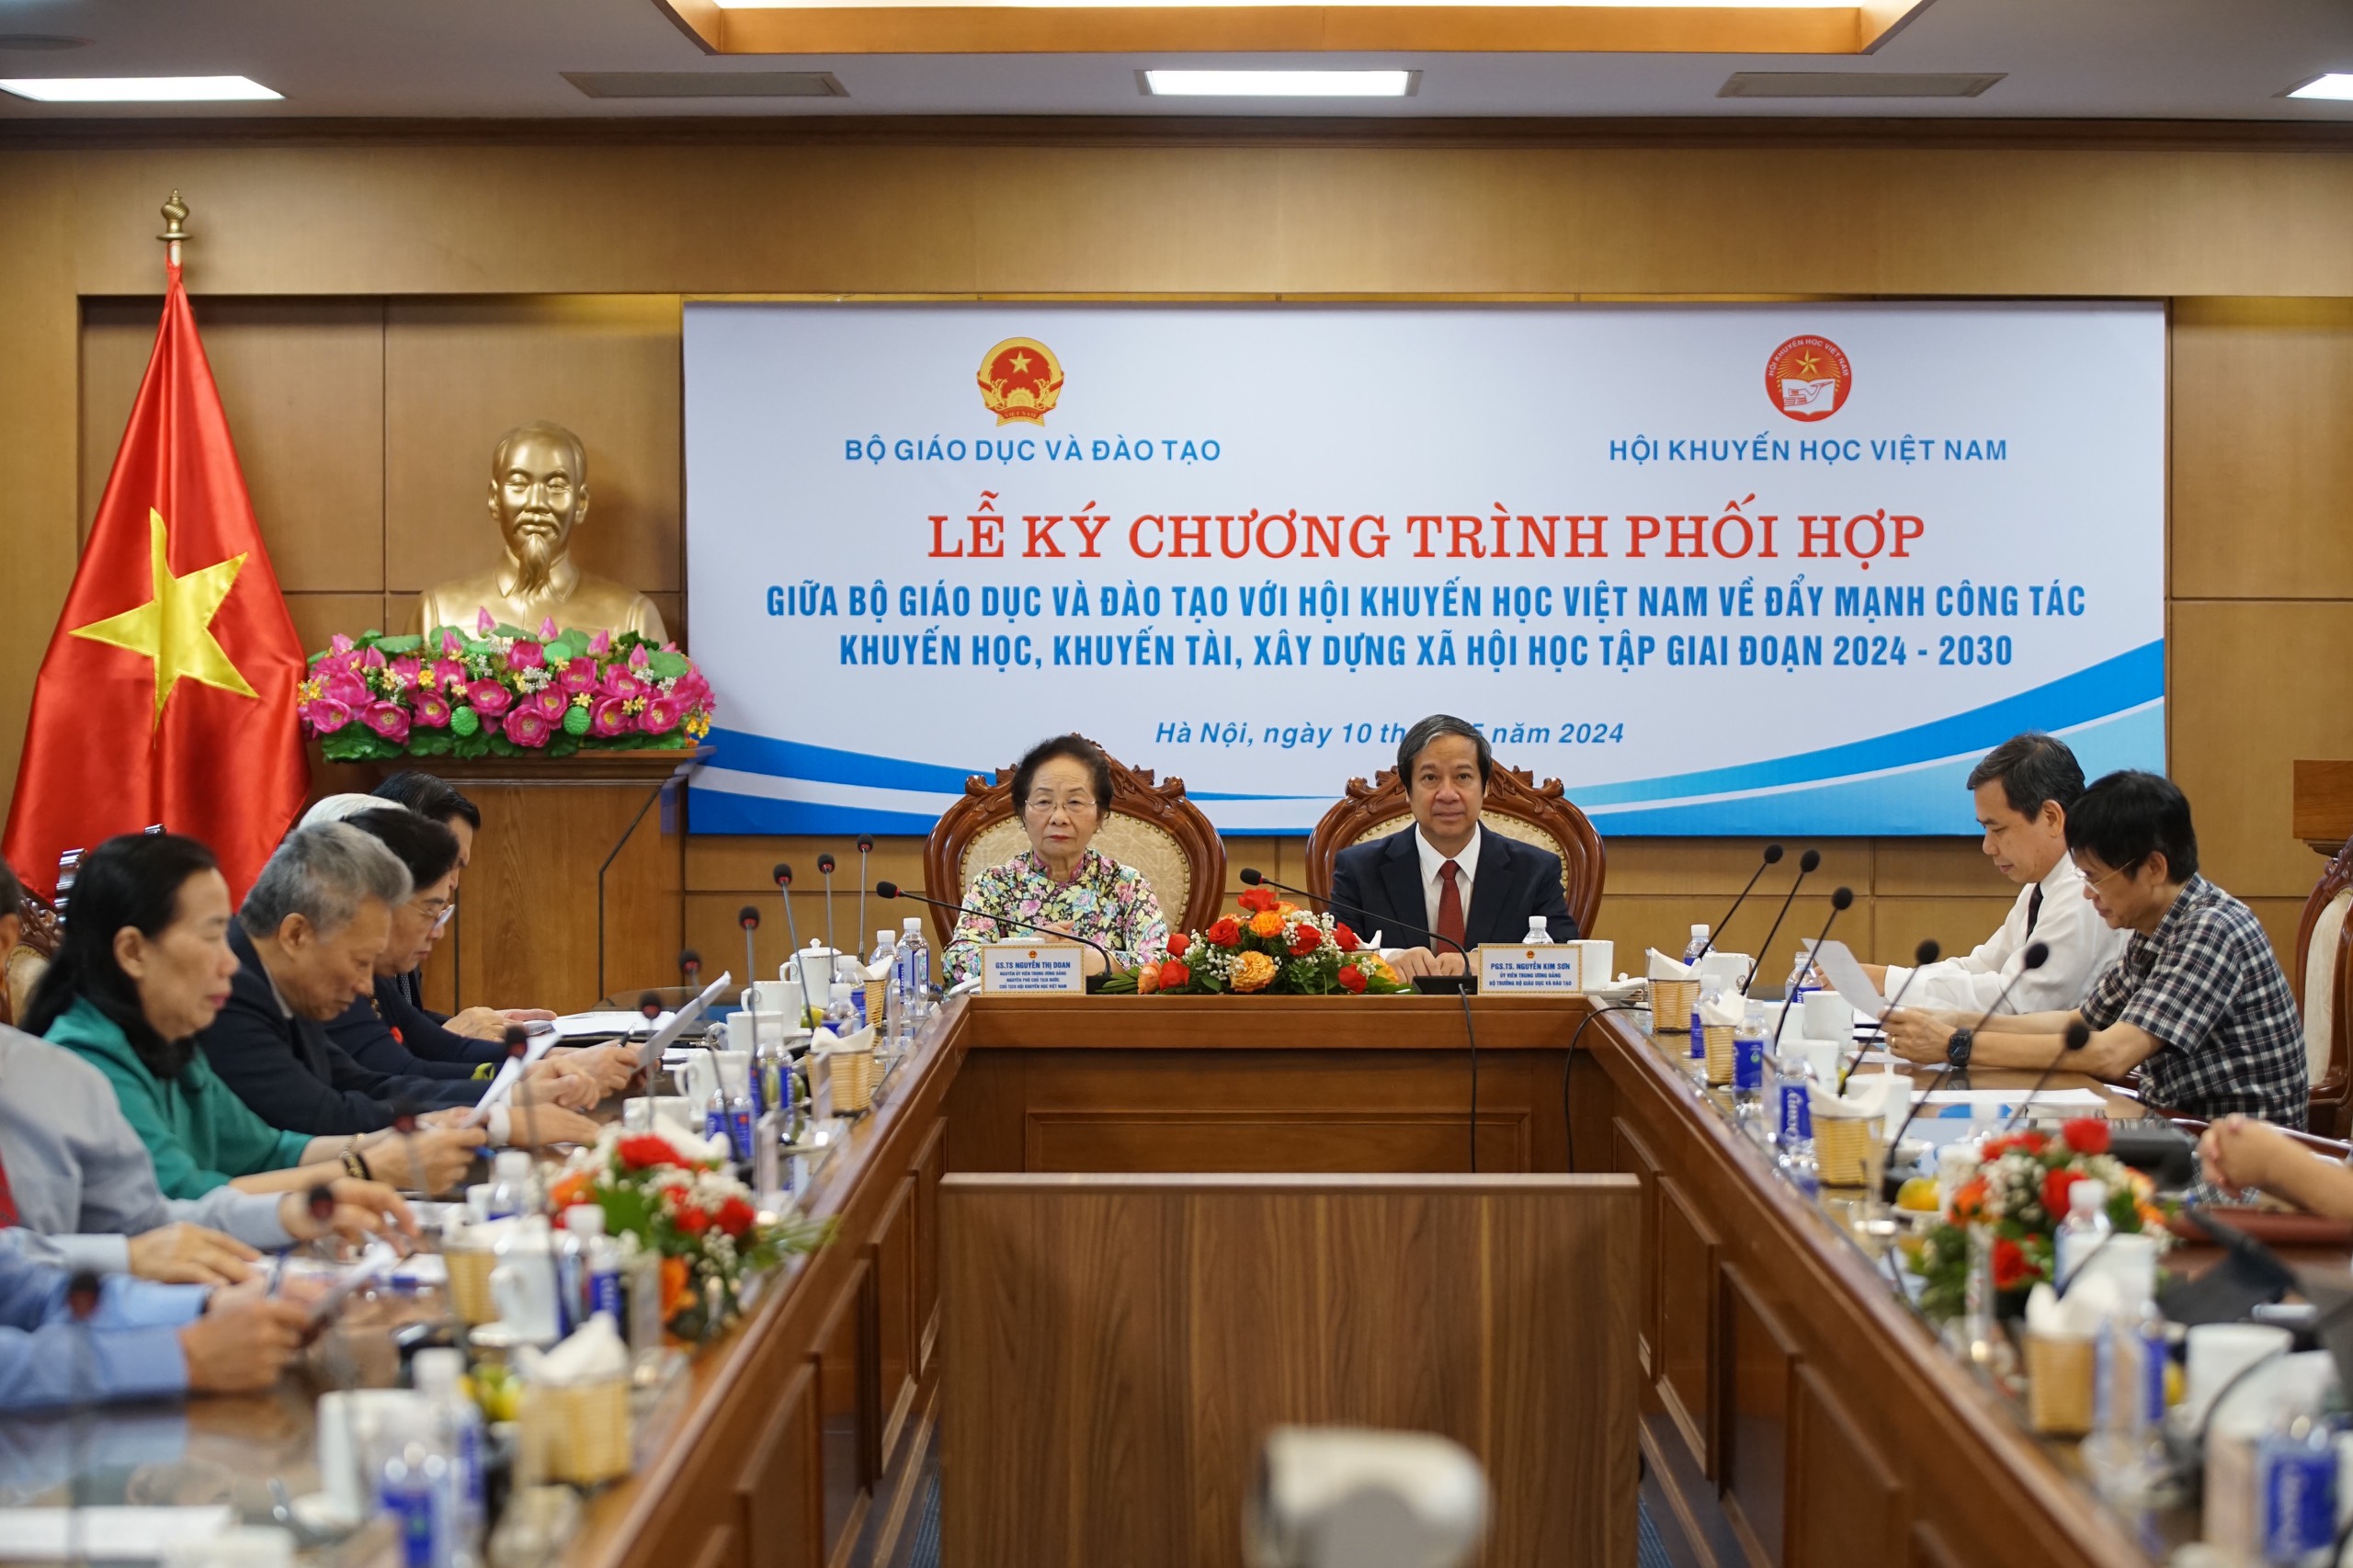 Chủ tịch Hội Khuyến học Việt Nam Nguyễn Thị Doan và Bộ trưởng Bộ GD&ĐT Nguyễn Kim Sơn chủ trì buổi lễ.